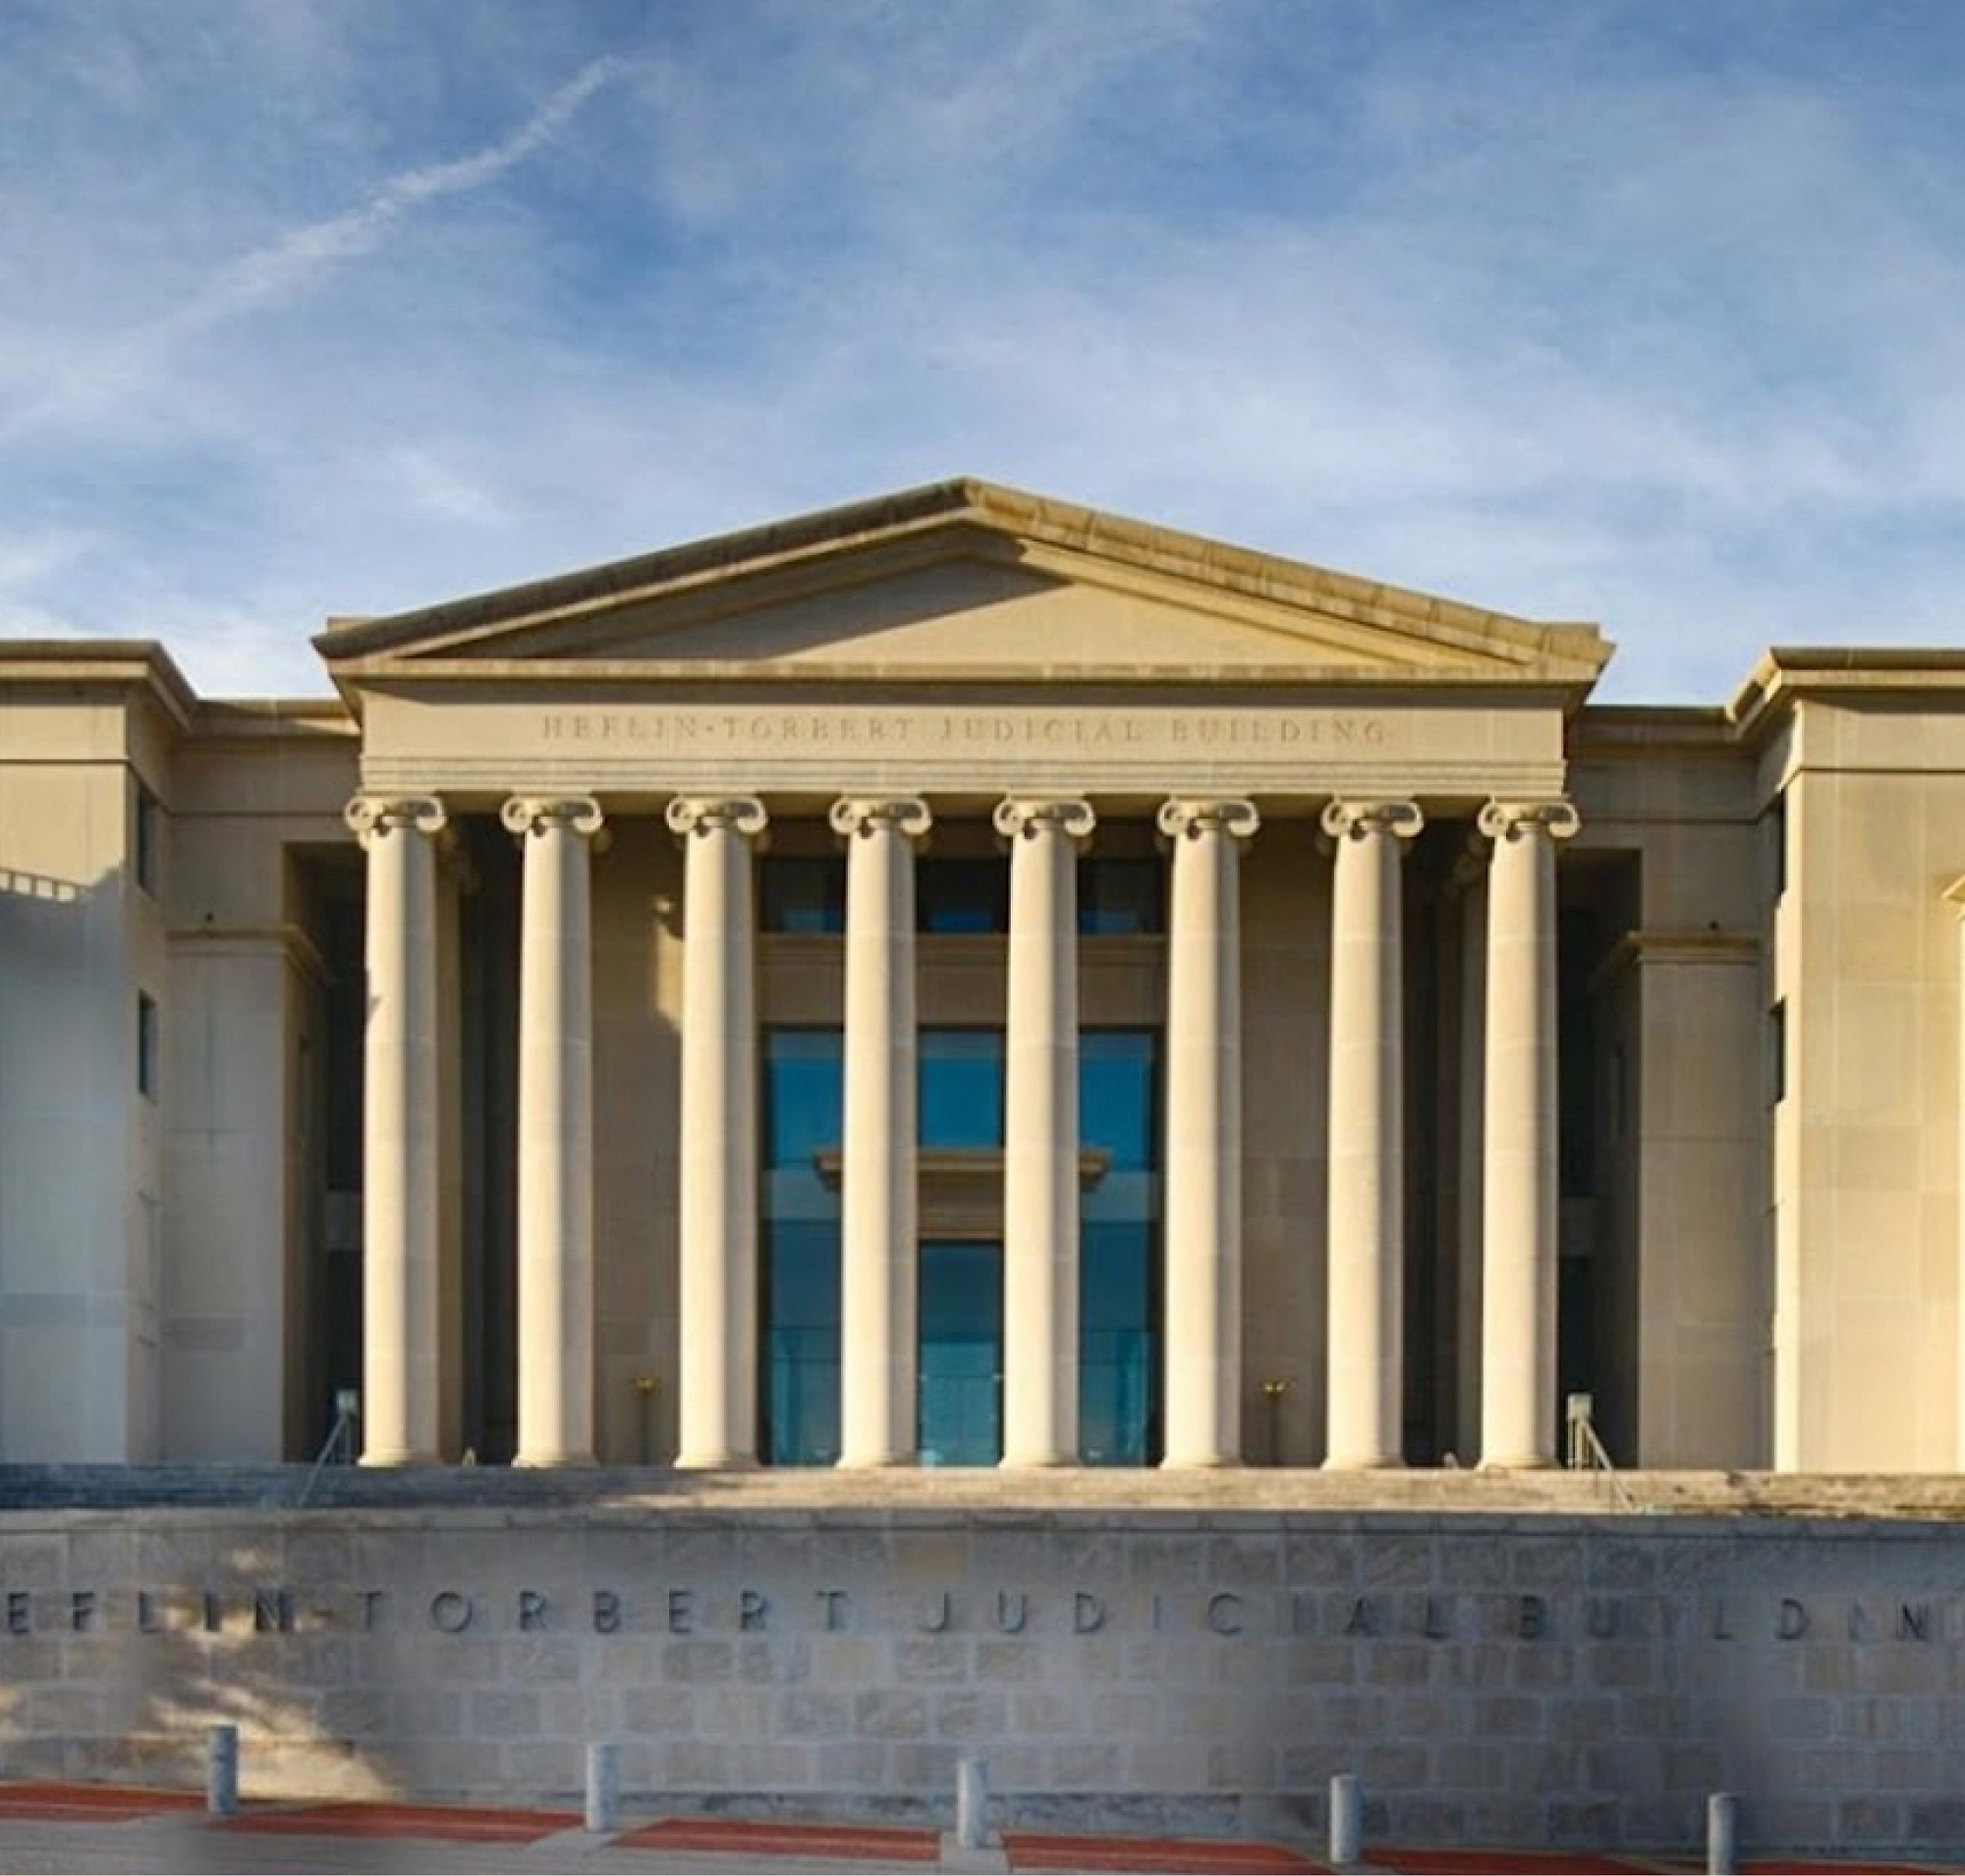 Vista frontal del edificio judicial Heflin-Torbert con una fachada clásica con columnas bajo un cielo claro.